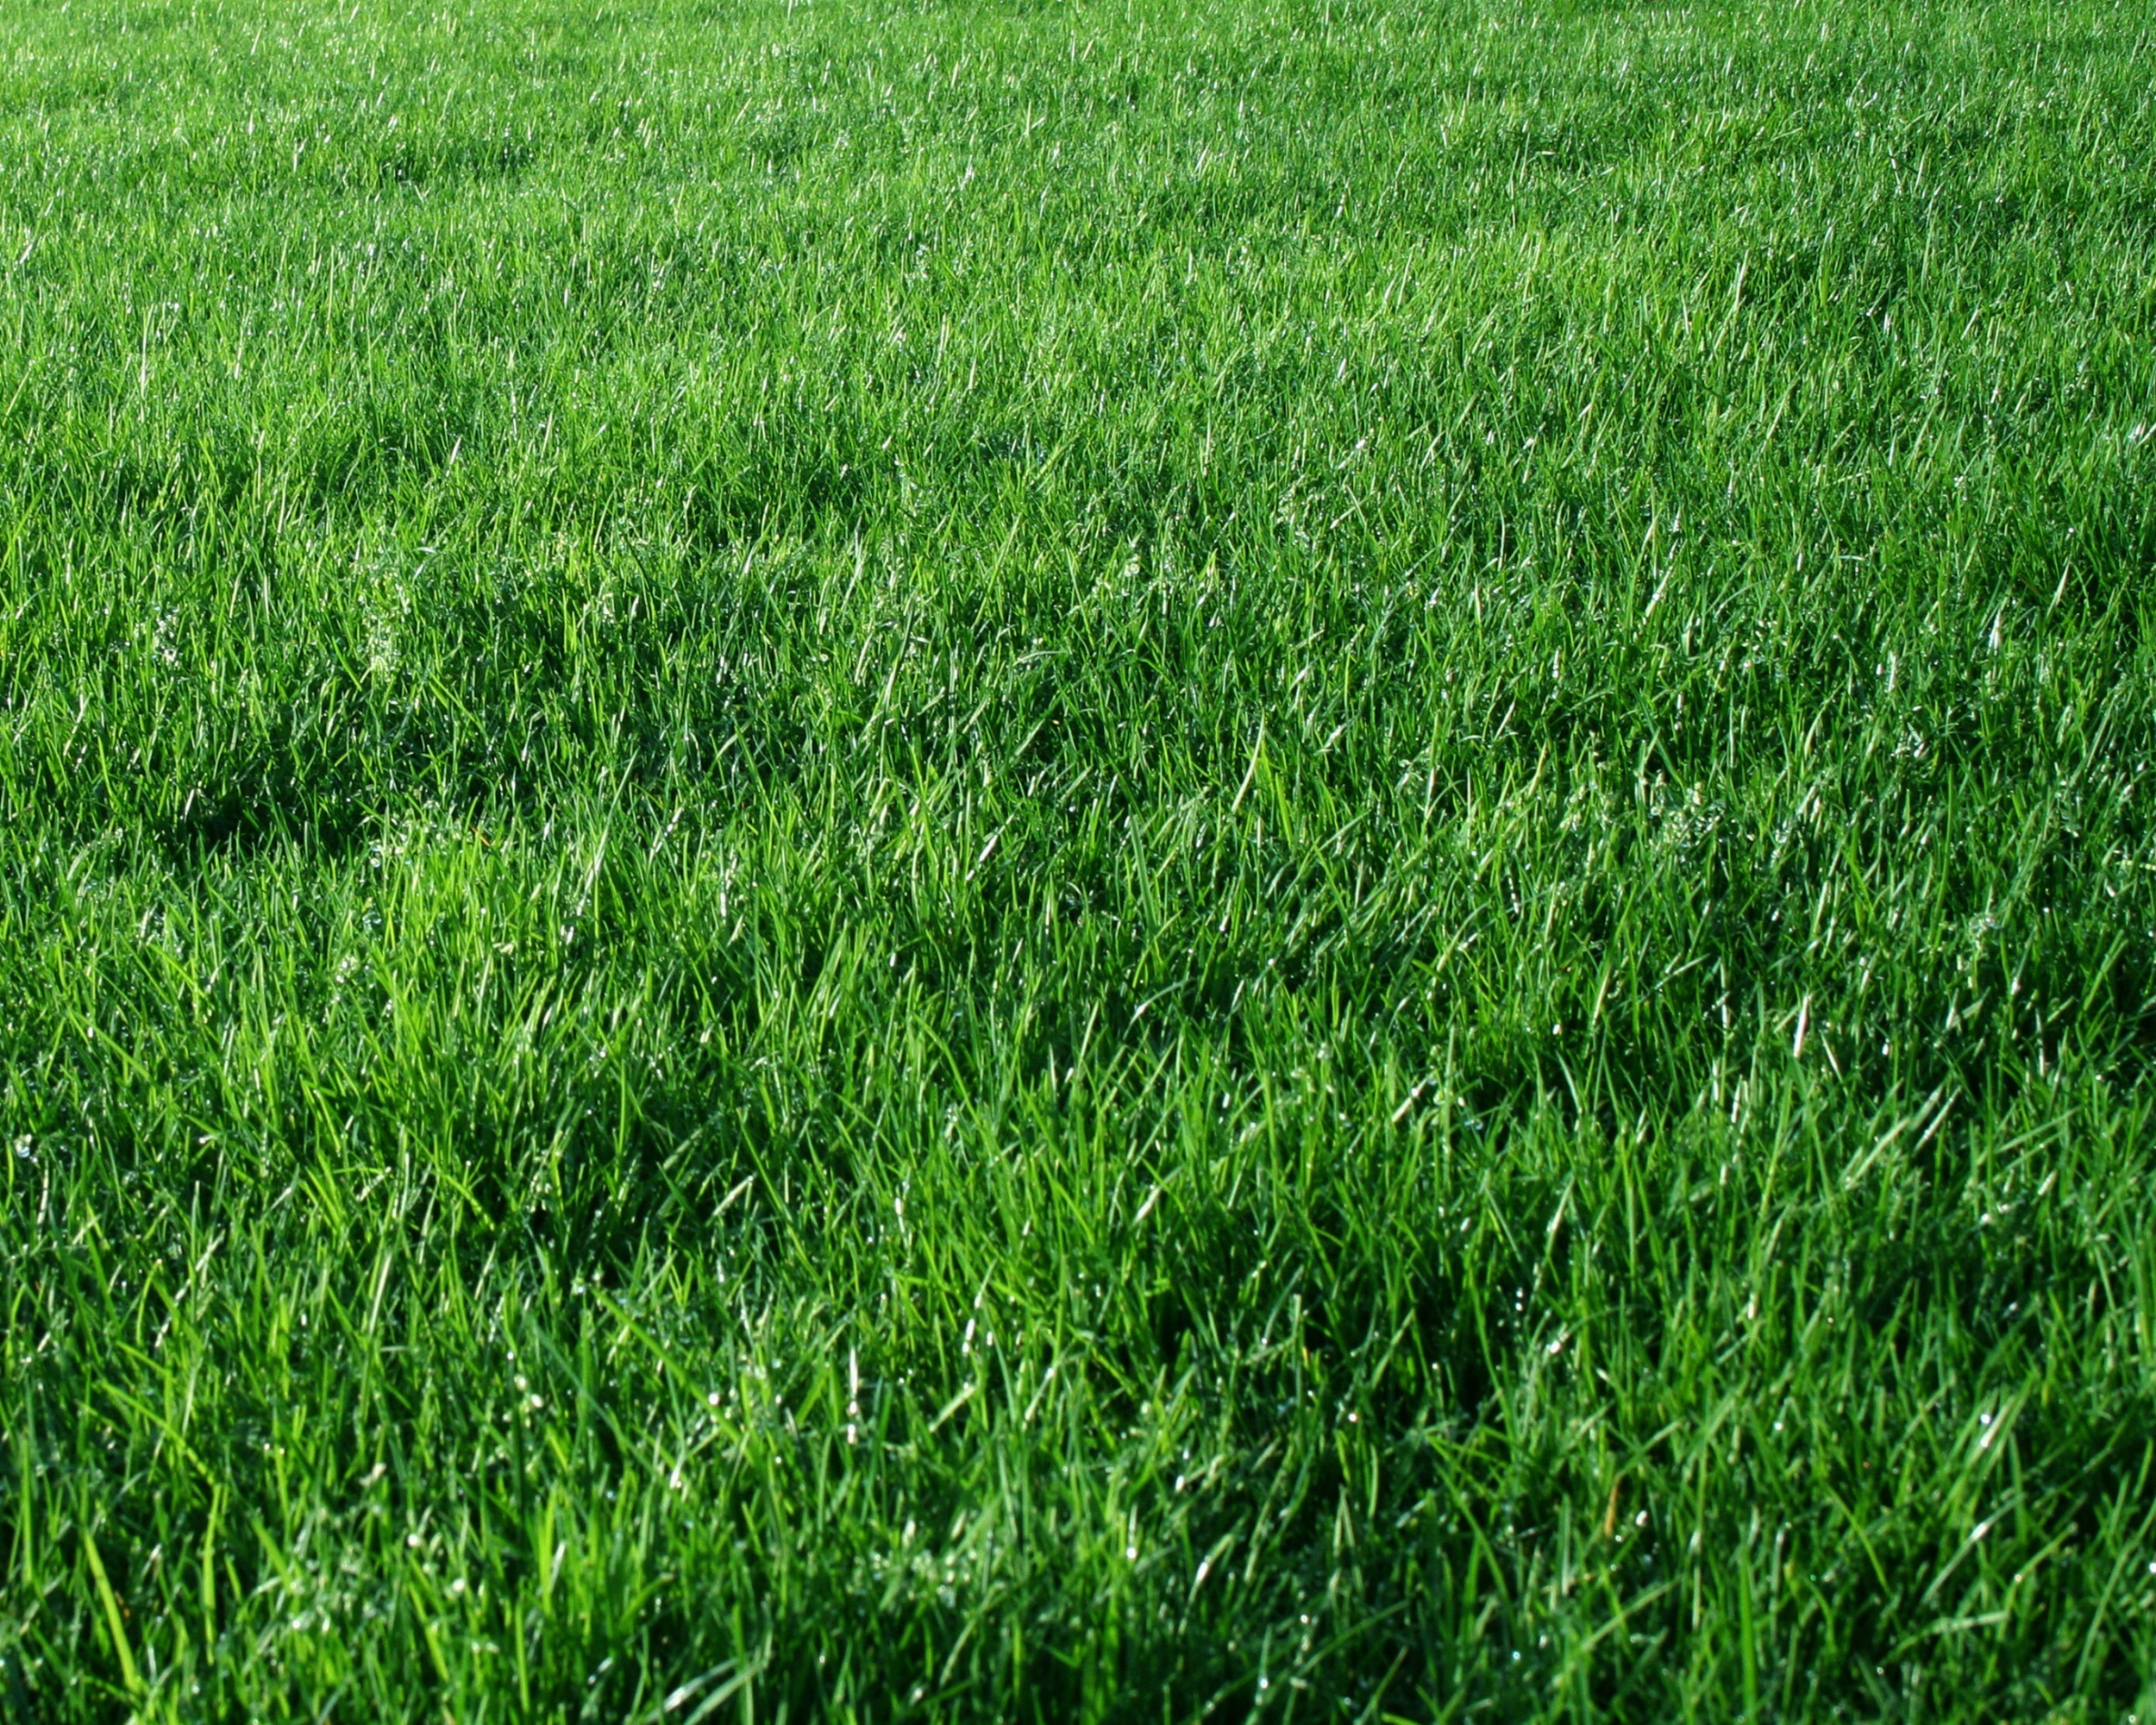 Tận hưởng cảm giác đượm mát và thư giãn khi đắm mình vào một bức hình nền cỏ xanh chất lượng cao. Được thiết kế với chất lượng tuyệt vời, gam màu xanh nổi bật sẽ làm cho màn hình của bạn thêm sống động và cuốn hút.